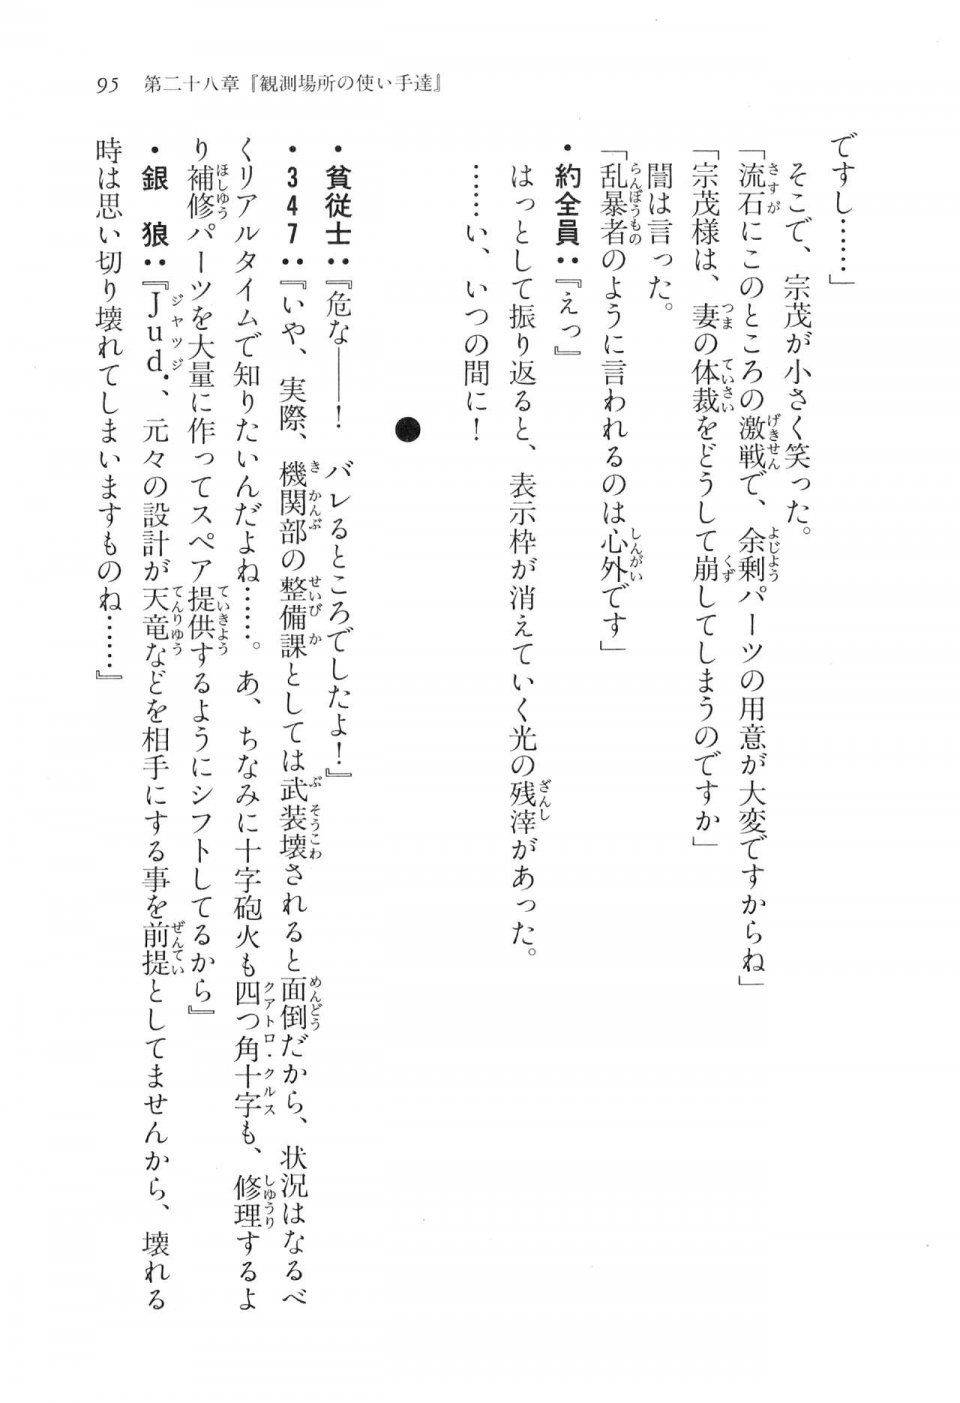 Kyoukai Senjou no Horizon LN Vol 17(7B) - Photo #95